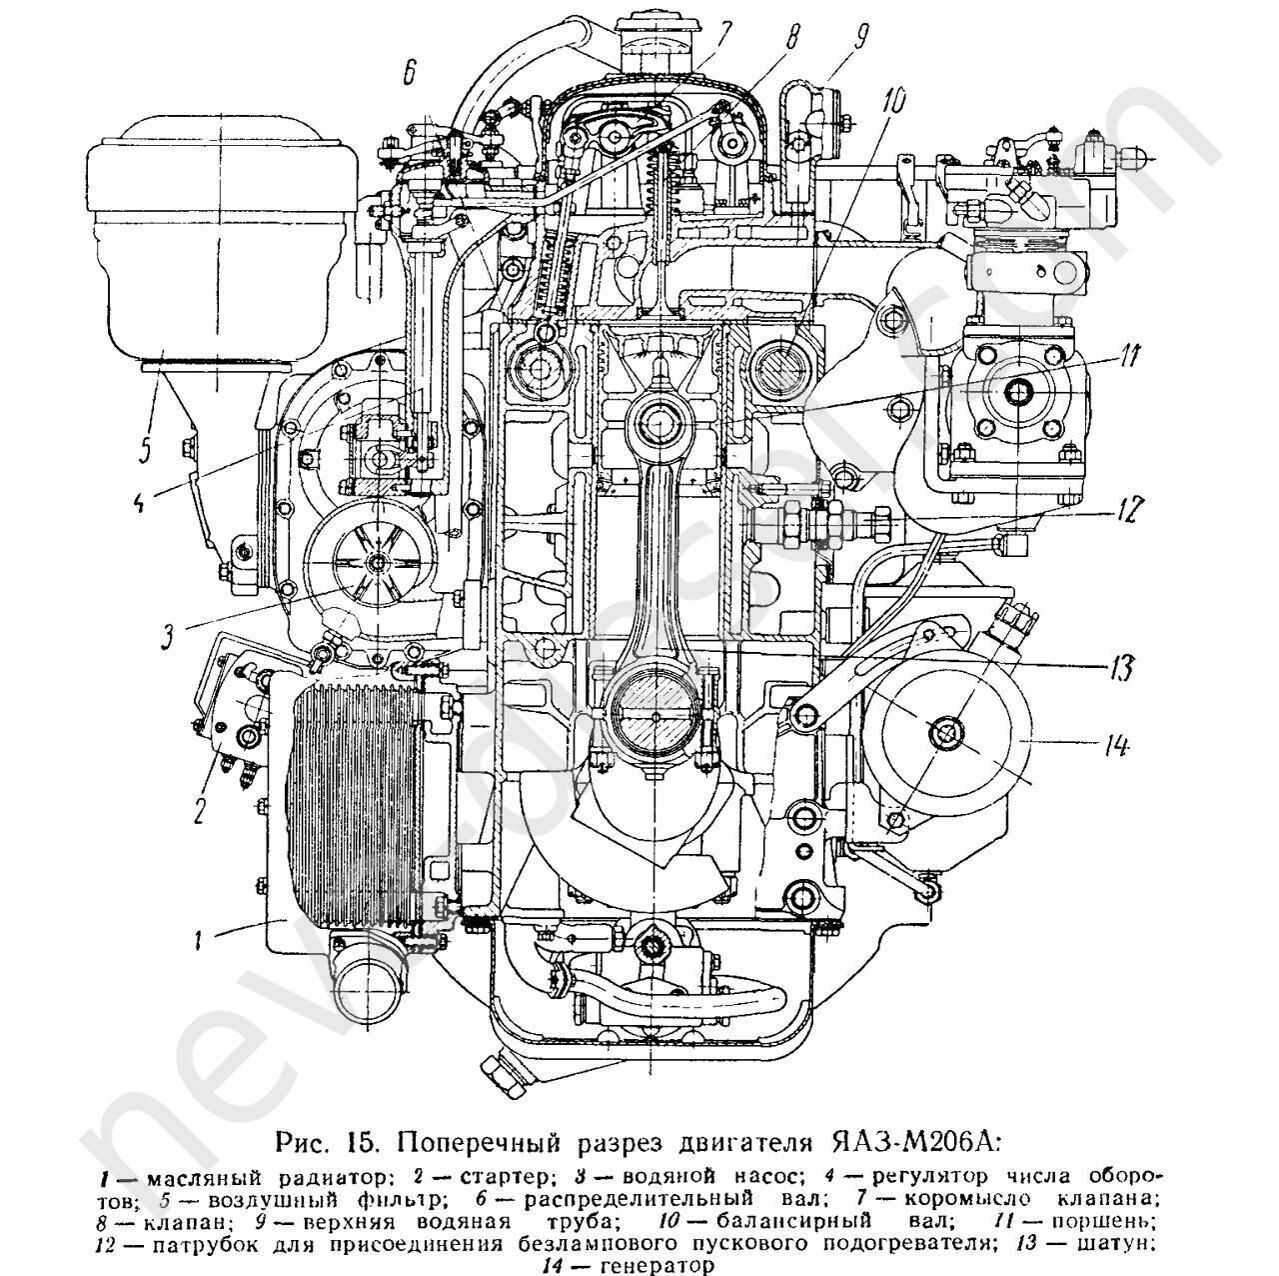 Инструкция по эксплуатации и техническому обслуживанию двигателей ЯАЗ-М204 и ЯАЗ-М206